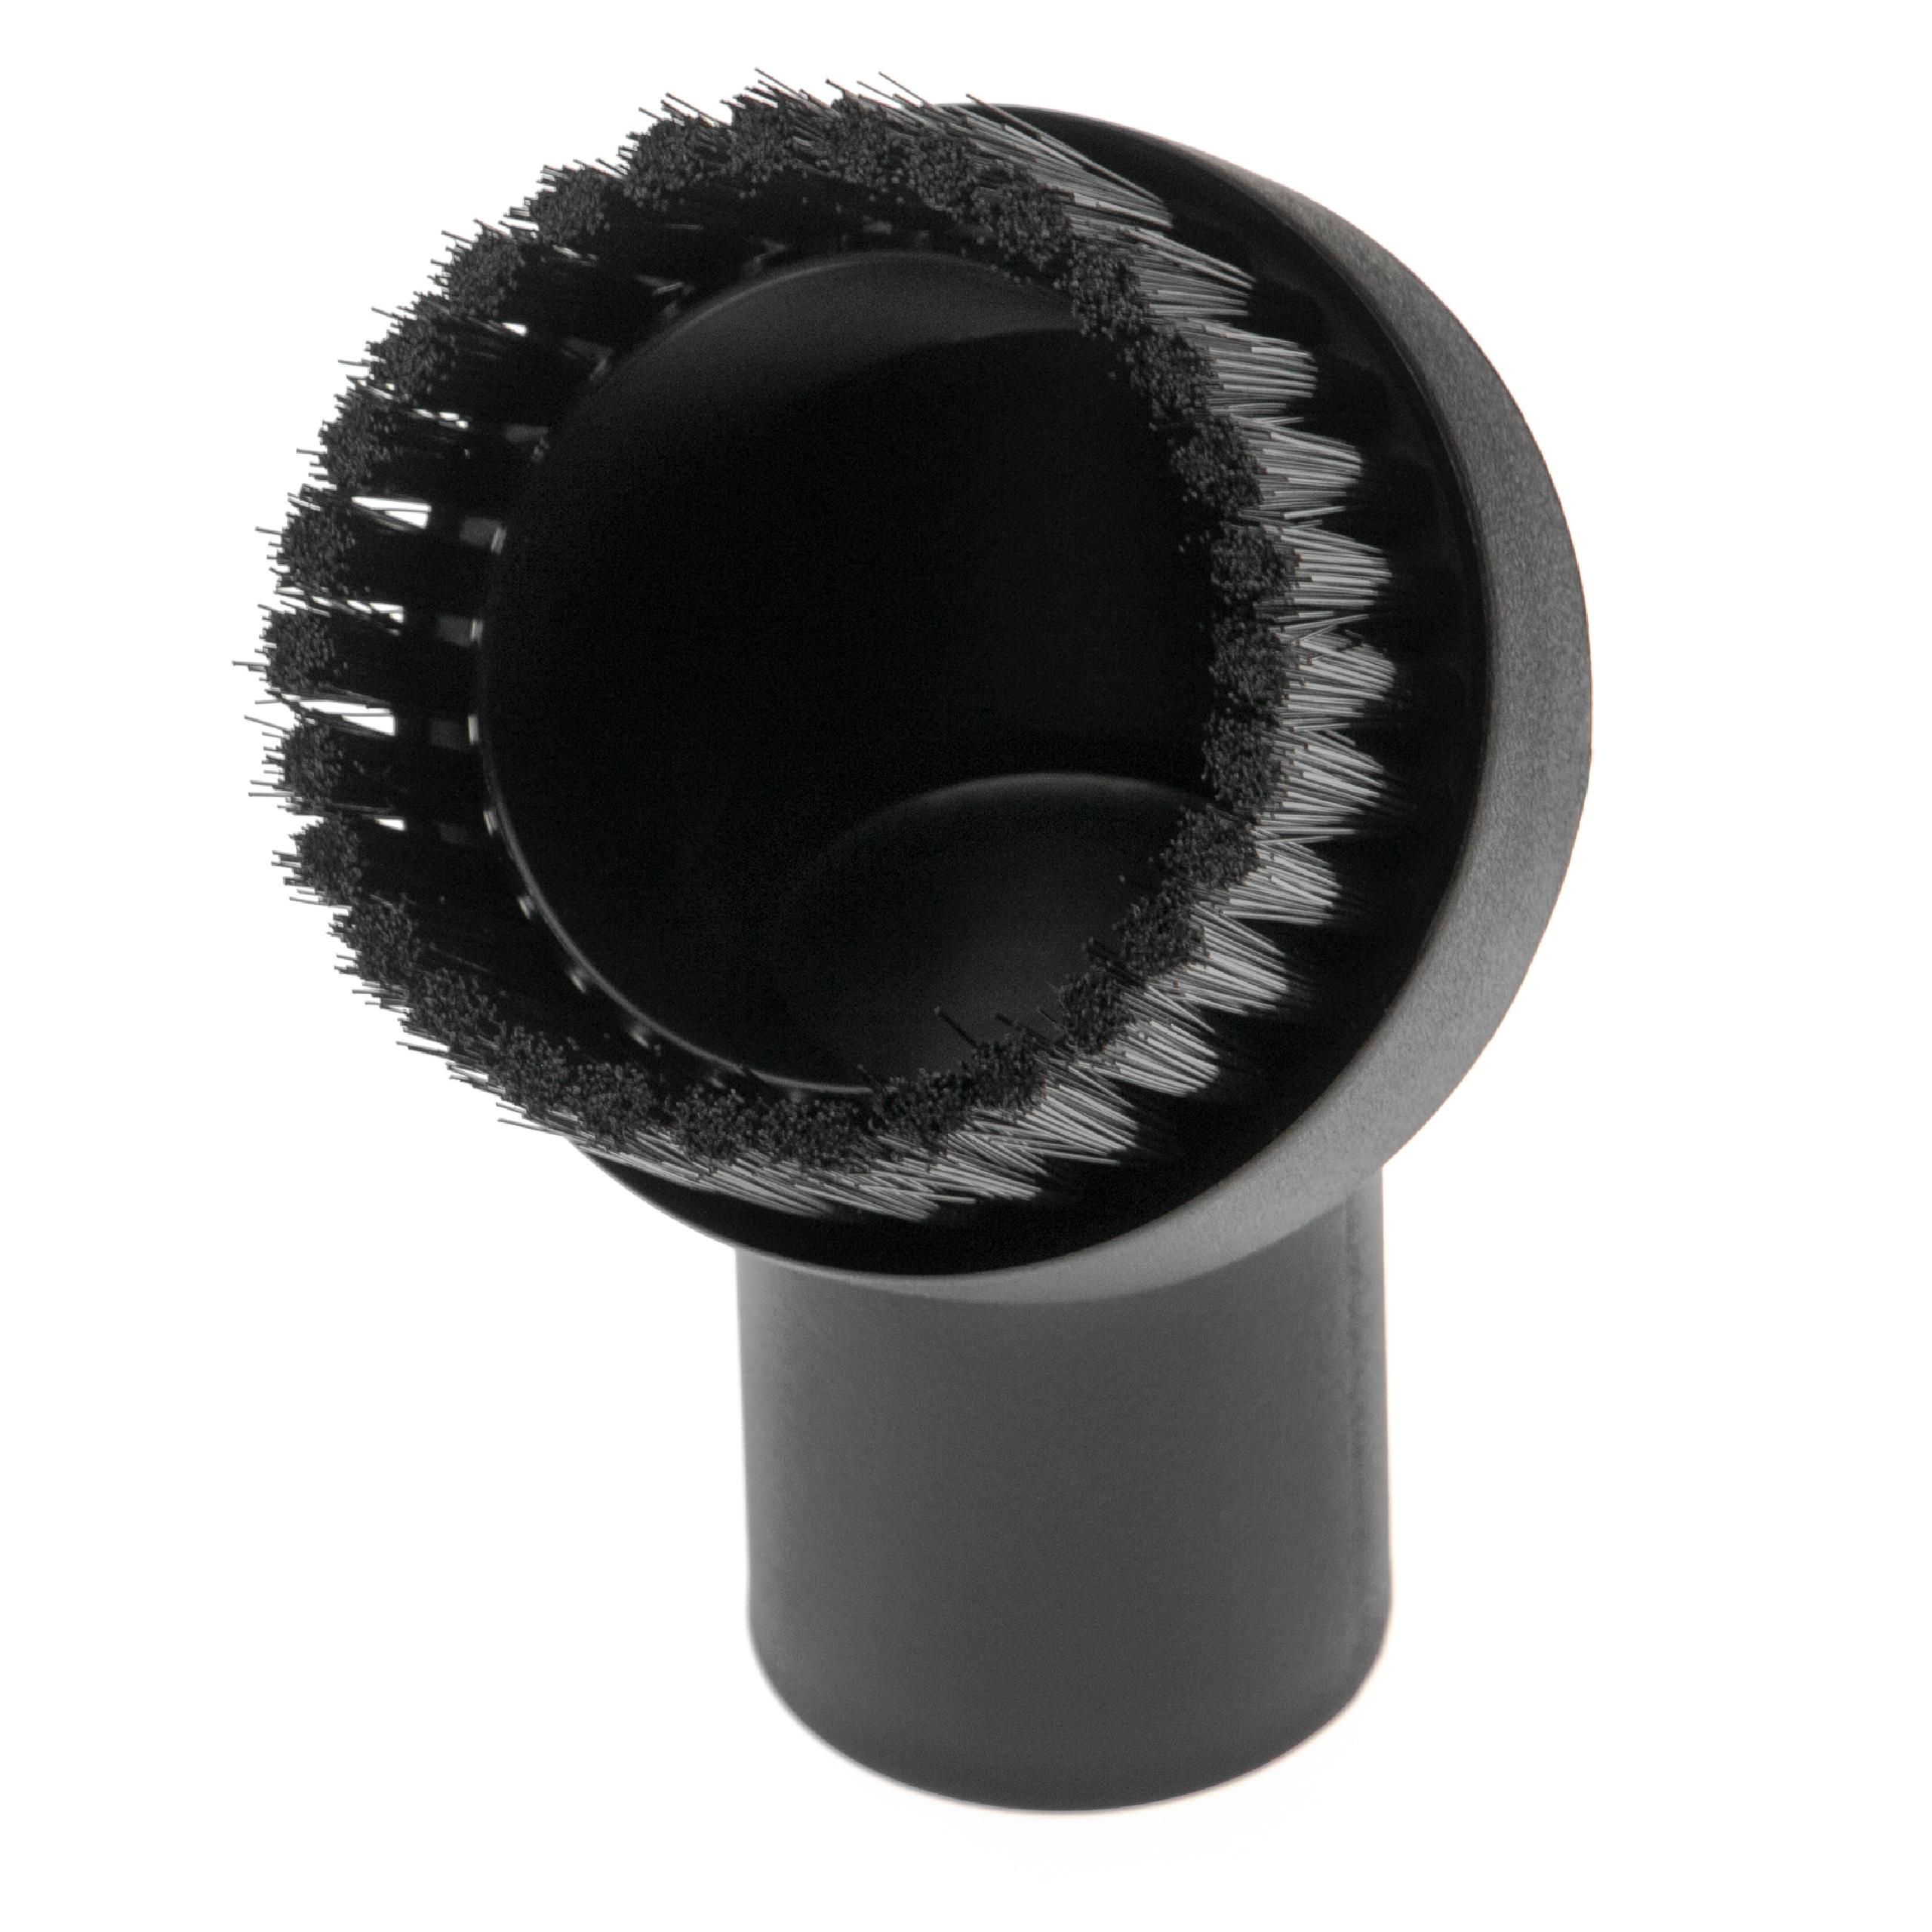  Boquilla cepillo 32 mm conexión para aspiradora - Boquilla de muebles con cerdas